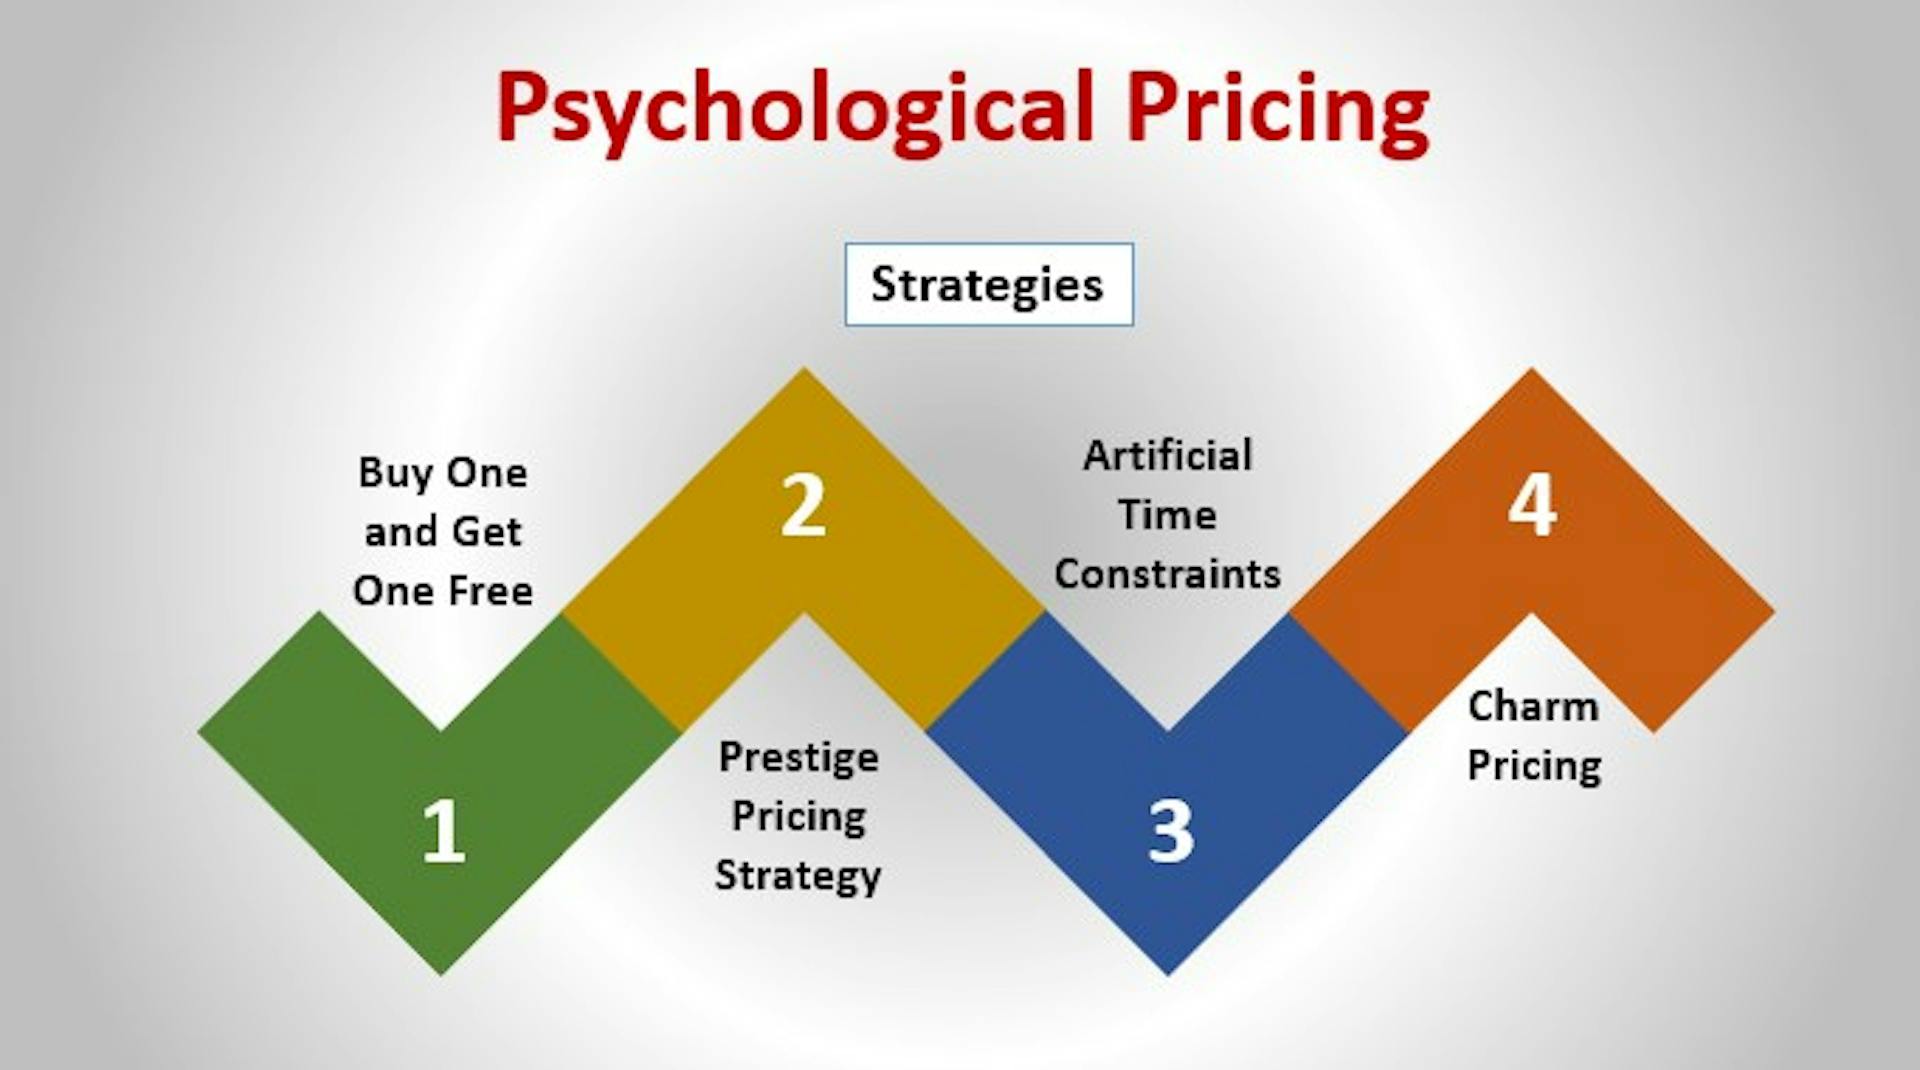 Psychological Pricing Model